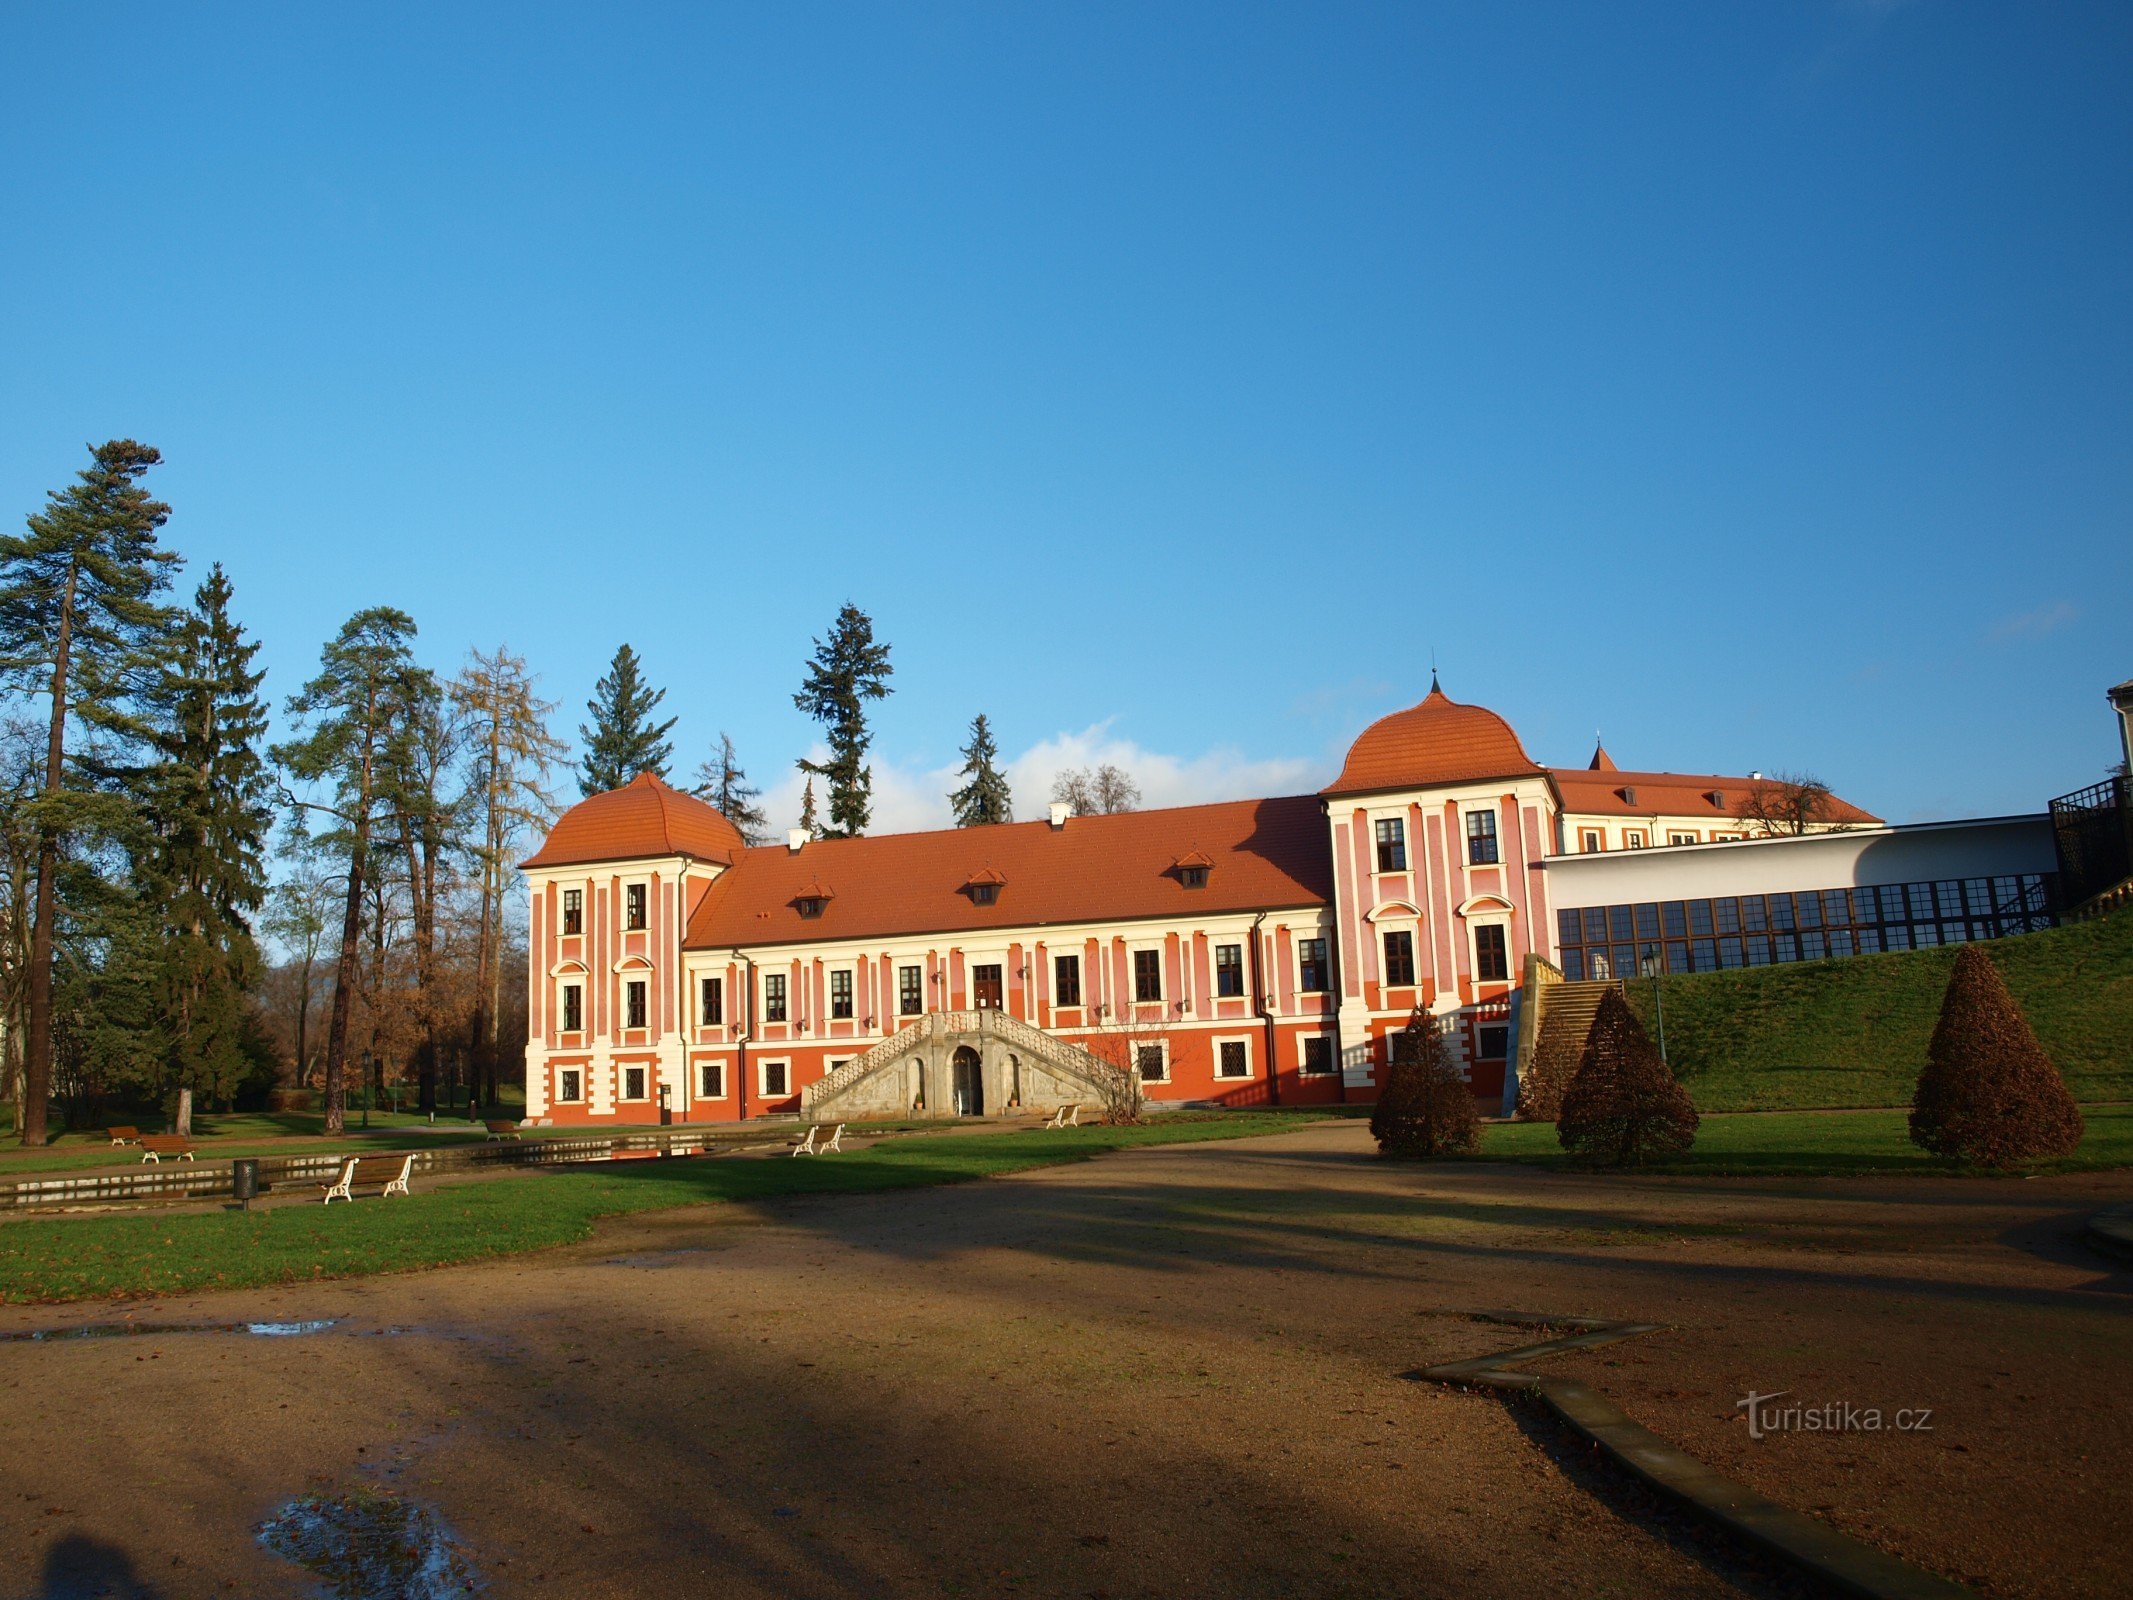 Castle Ostrov nad Ohří - Palace of Princes